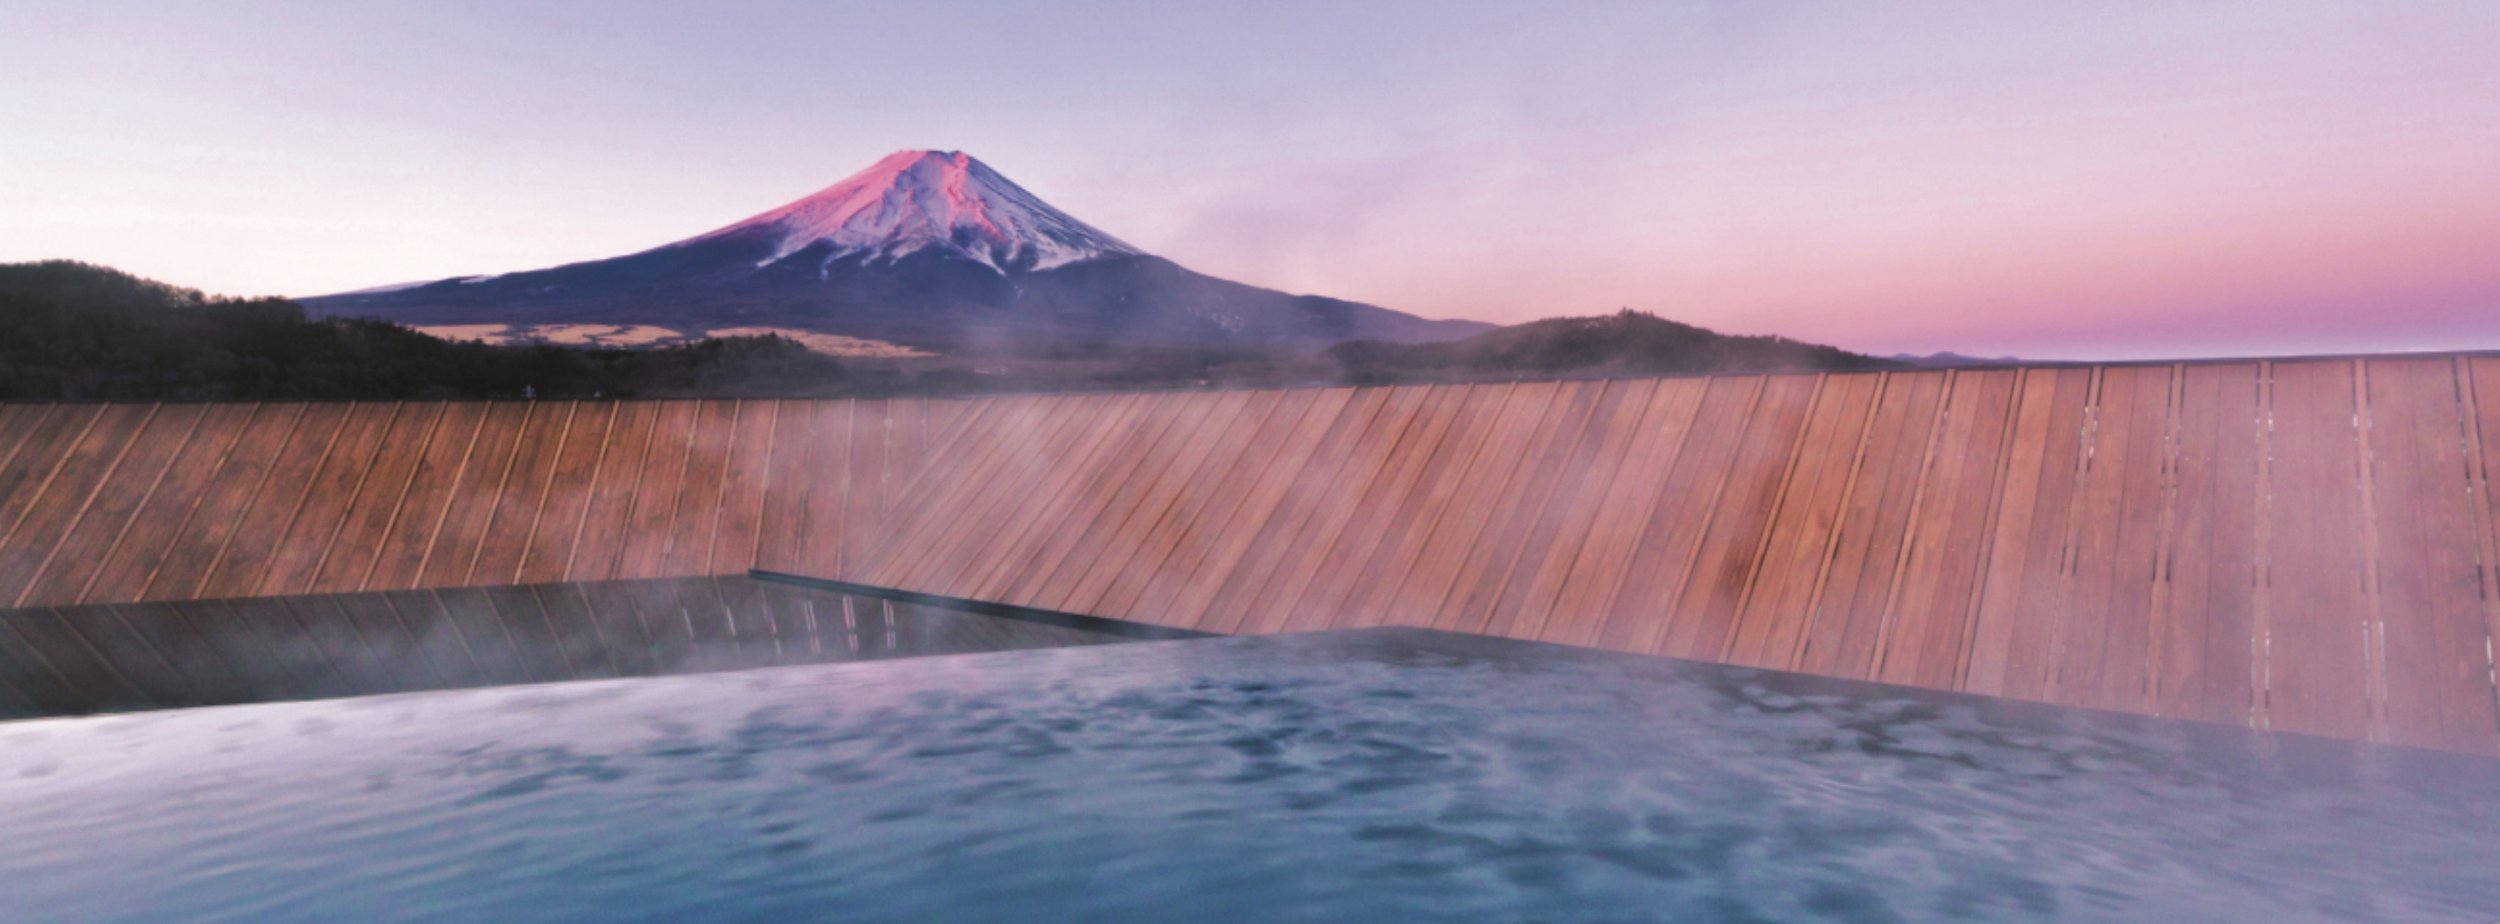 Kaneyamaen onsen Mt Fuji sunset.jpg